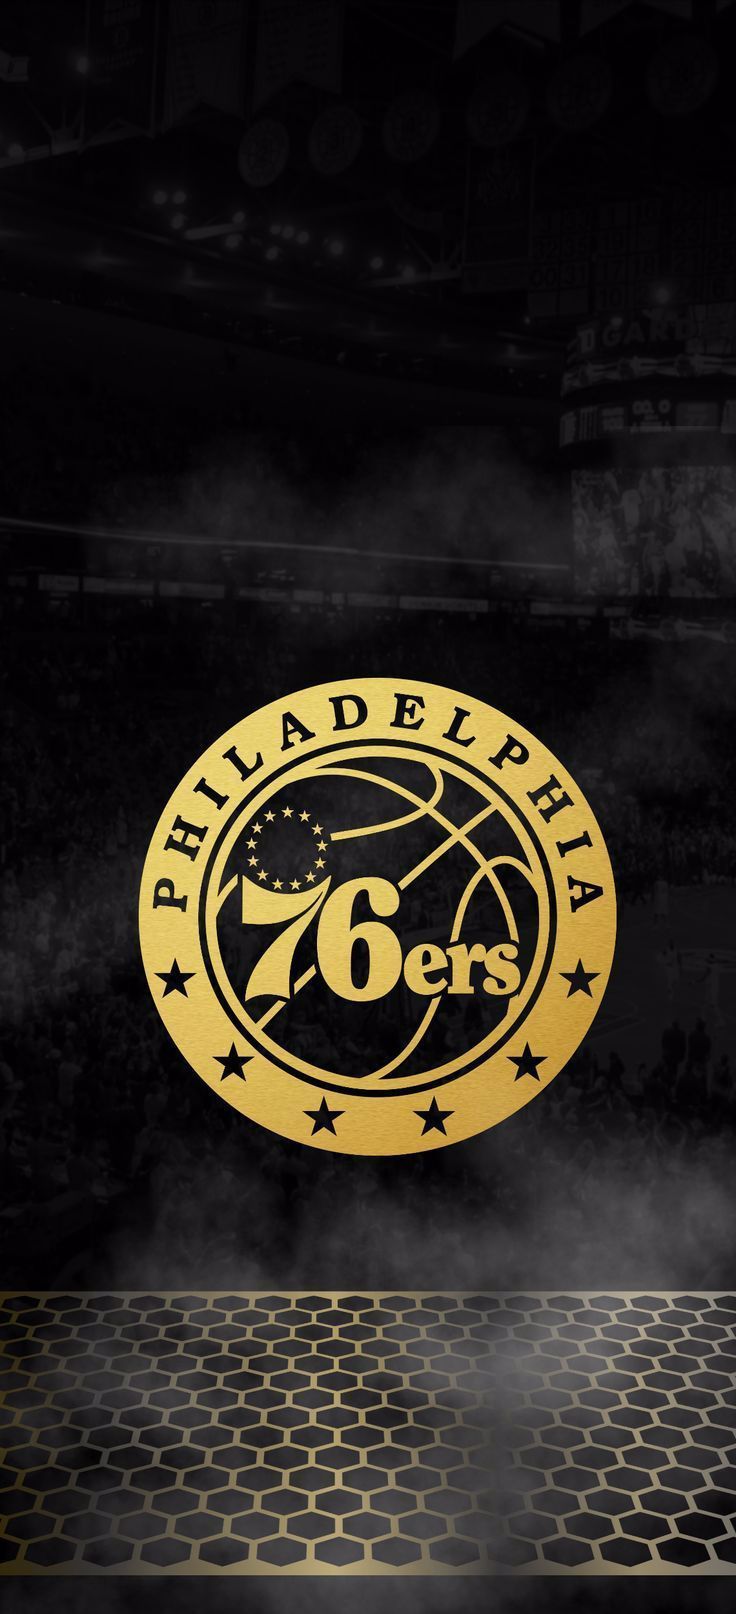 Philadelphia 76ers Wallpaper Background. Philadelphia 76ers, 76ers, Nba wallpaper